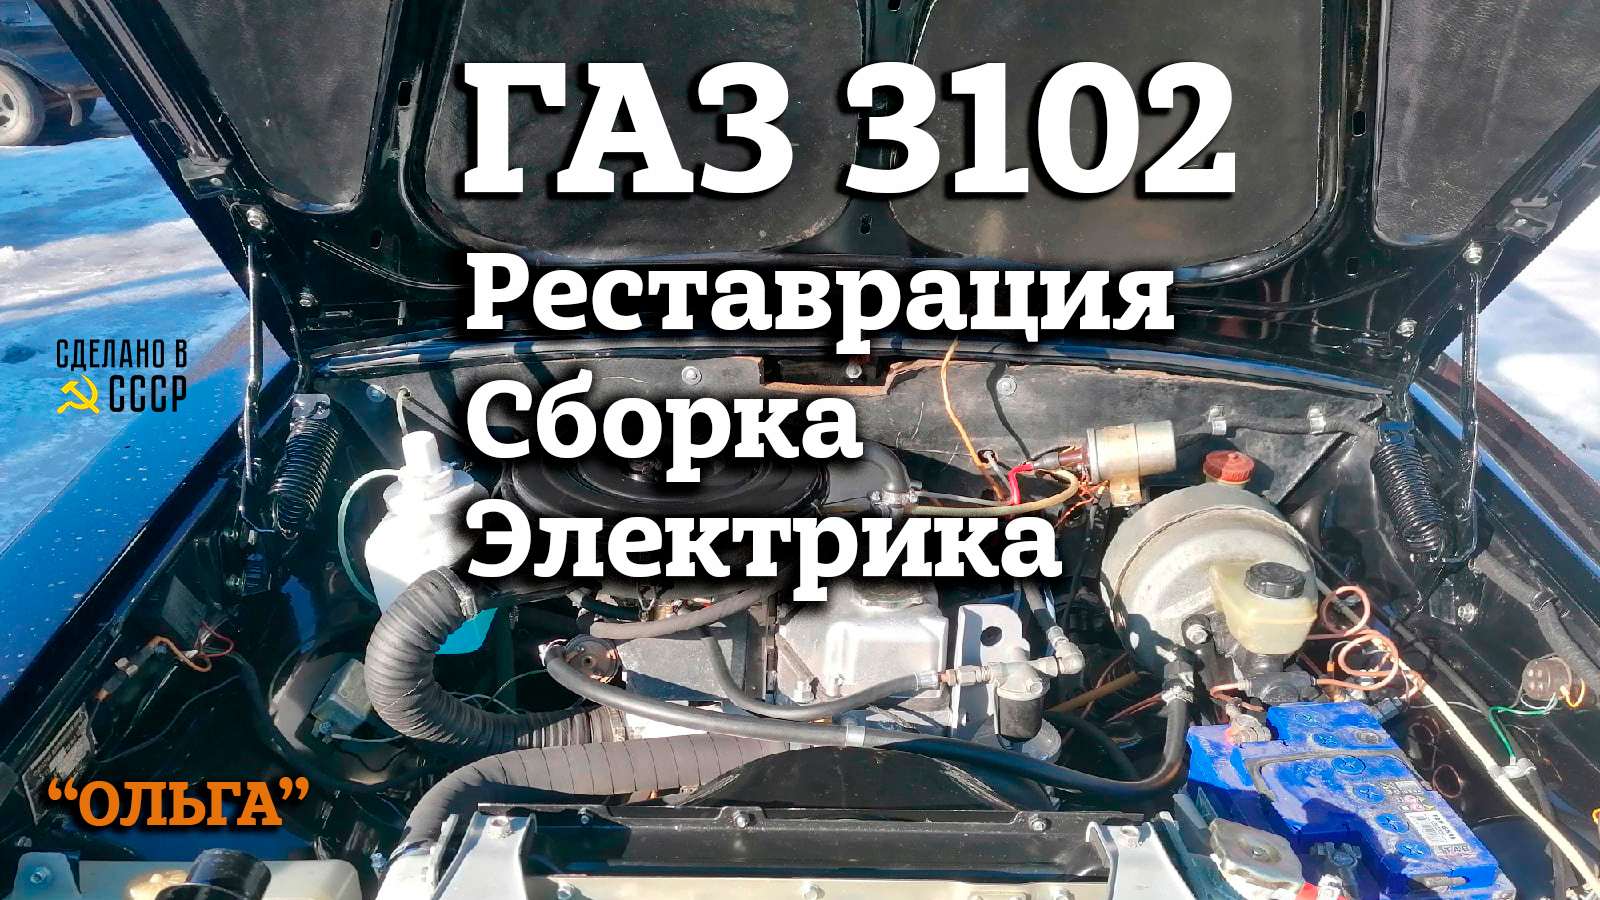 ГАЗ 3102 |Реставрация | Сборка | Электрика | Проект "ОЛЬГА"